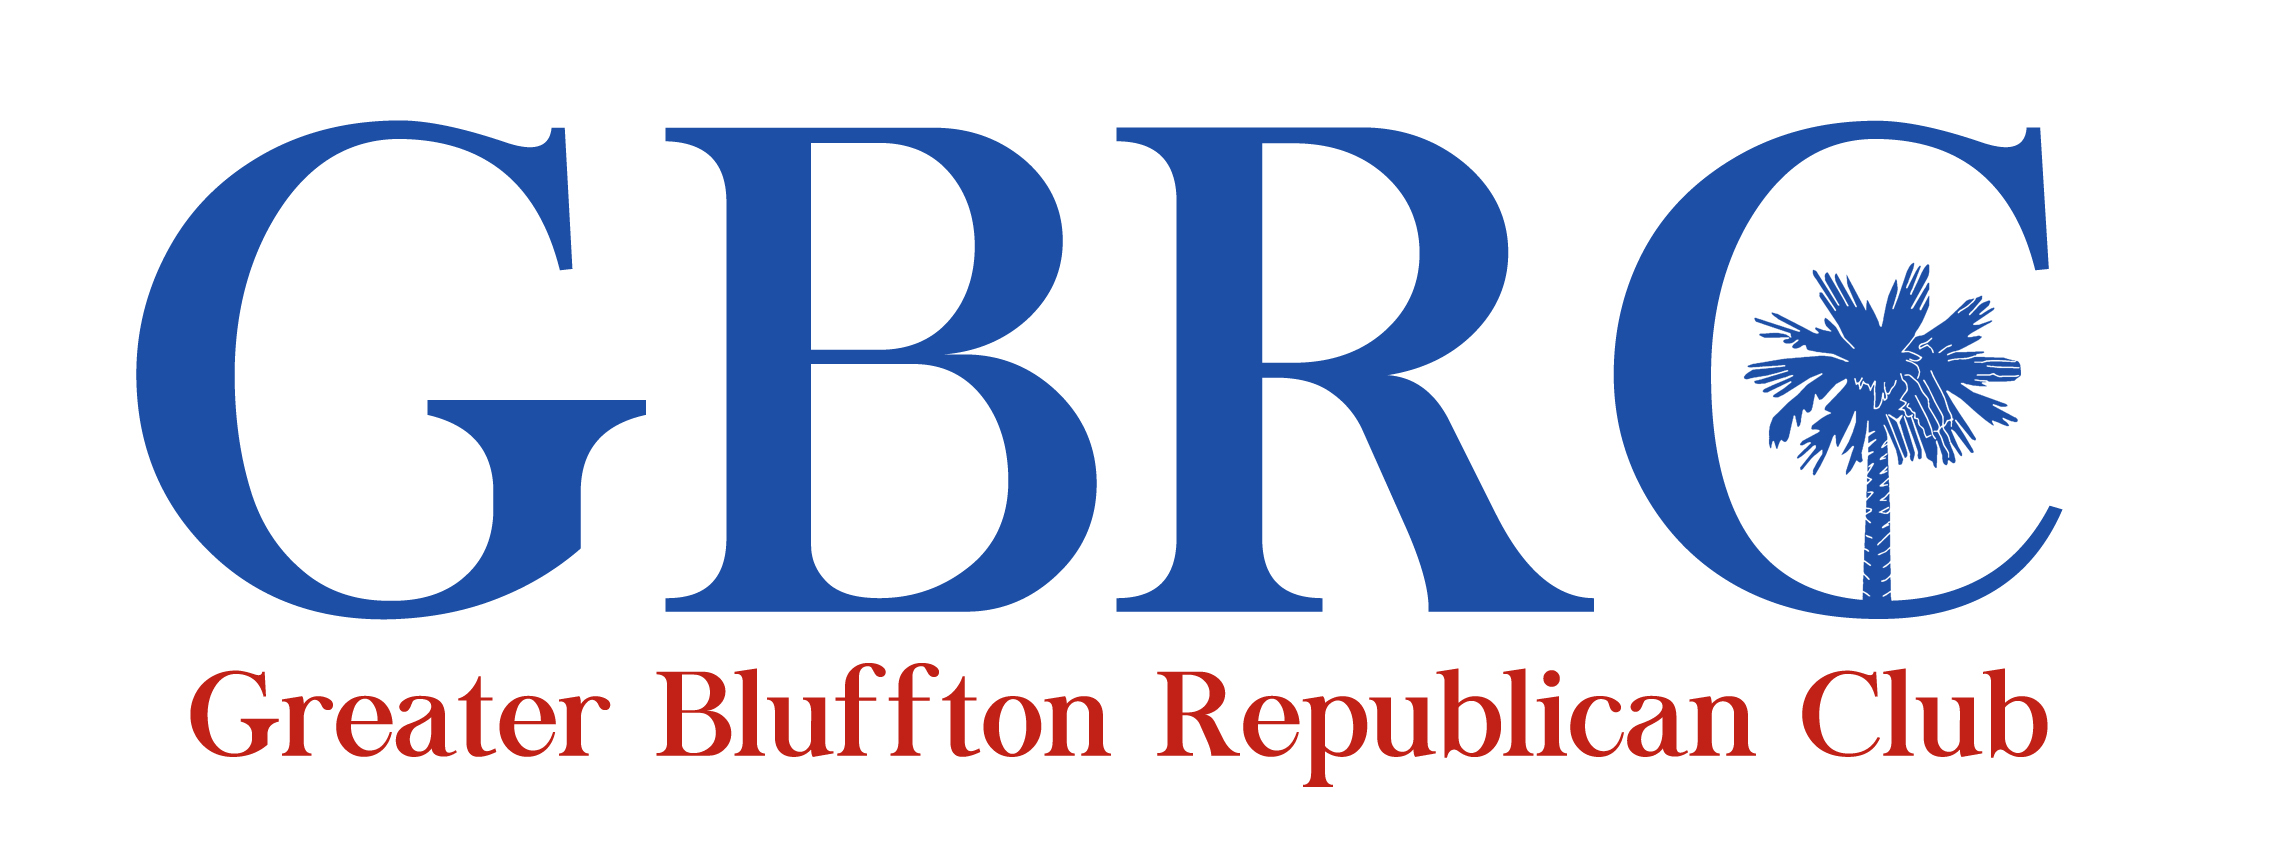 Greater Bluffton Republican Club logo